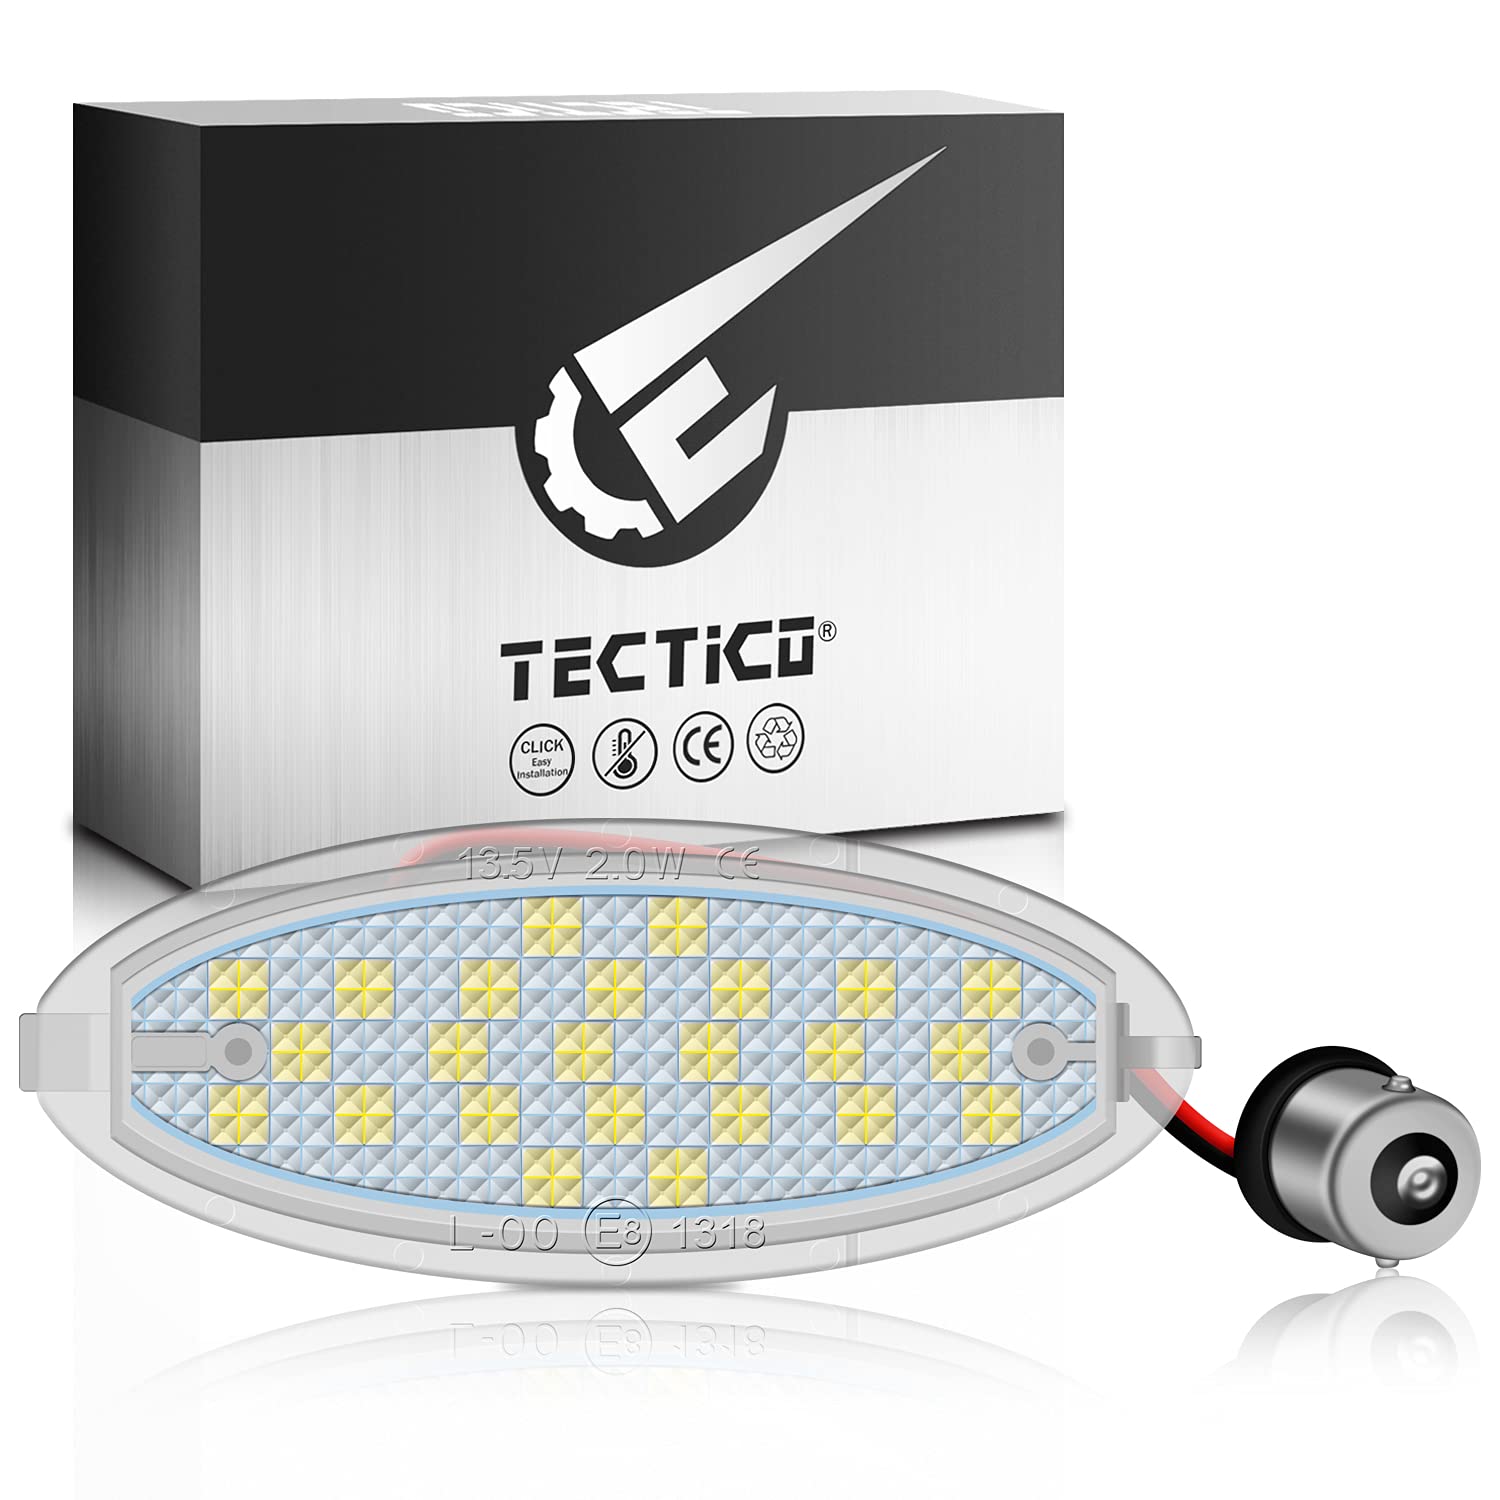 TECTICO LED Kennzeichenbeleuchtung Nummernschildbeleuchtung SMD Ultra Weiß Kompatibel mit Opel Astra F Corsa B Vectra B, 1 Lampe von TECTICO